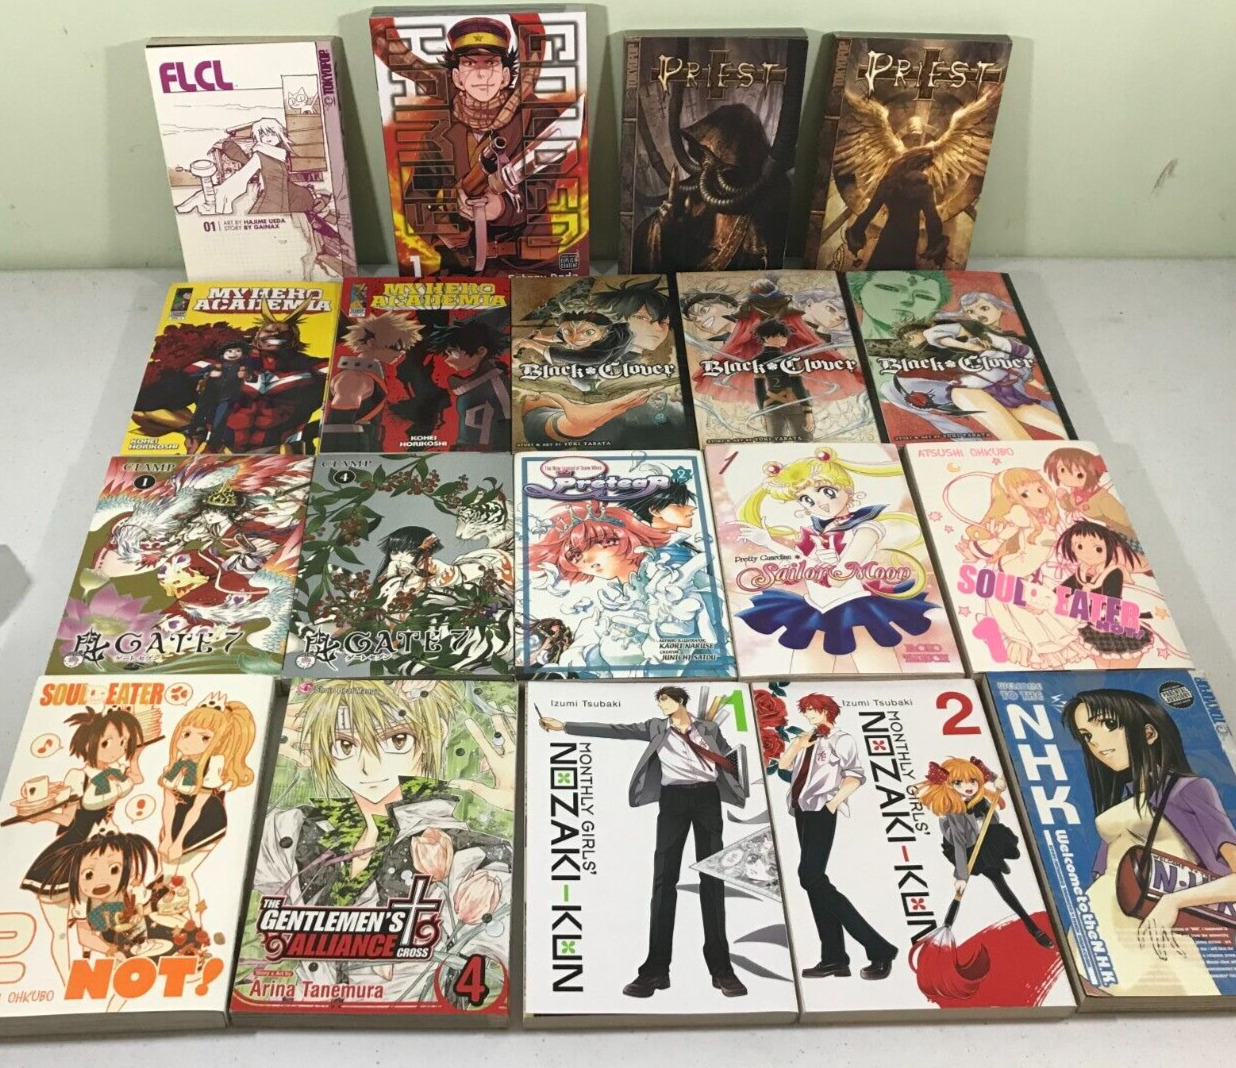 Lot 19 assorted manga comics, graphic novels: Soui Eater, Priest, Death, My Hero